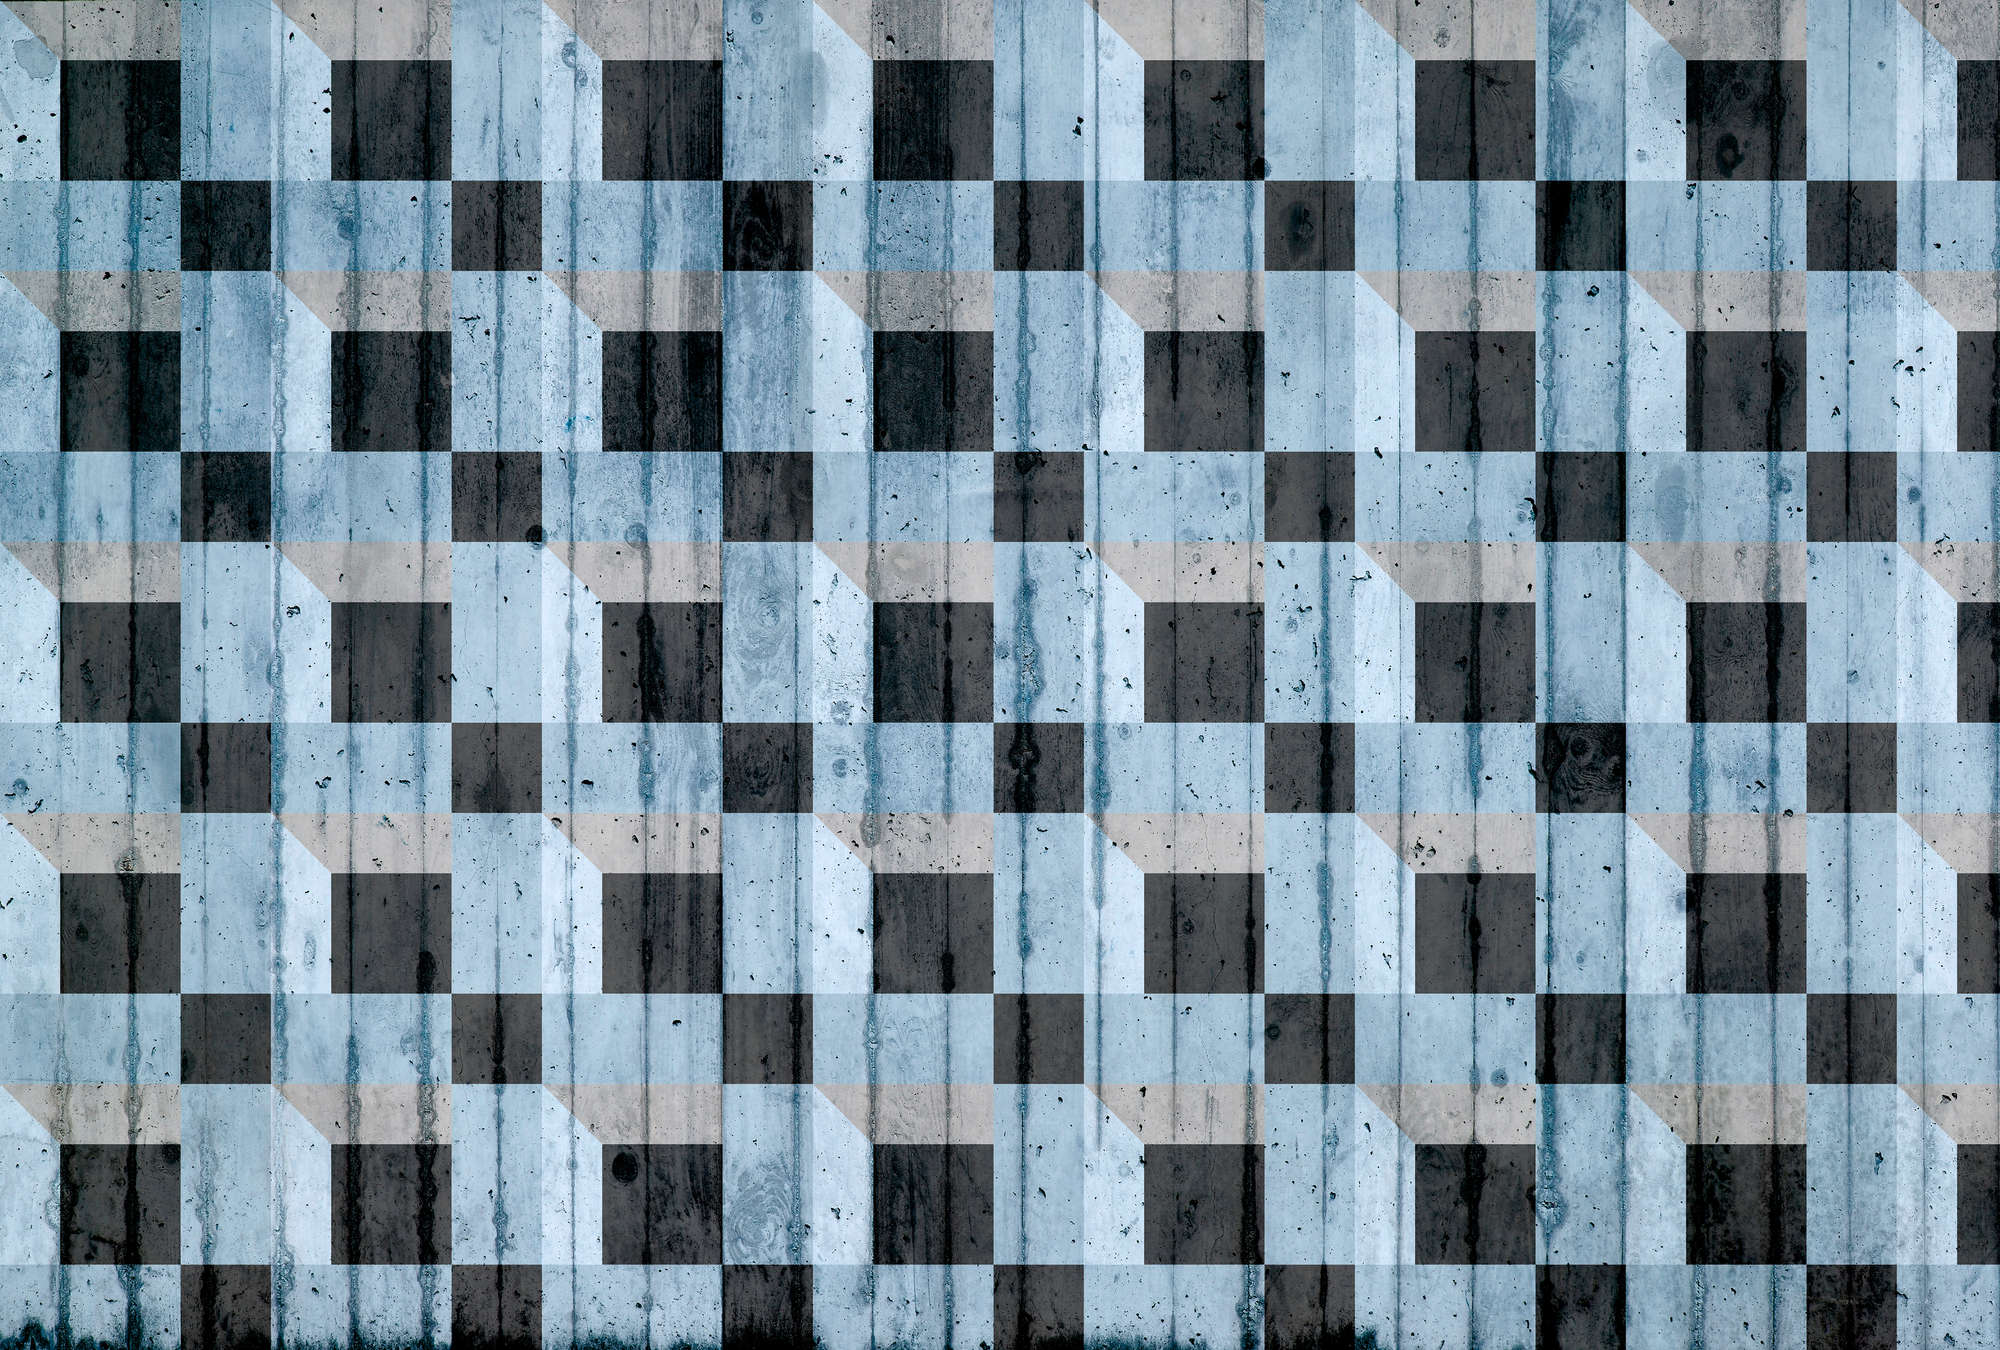             Papel pintado con aspecto de hormigón y diseño cuadrado - azul, negro, gris
        